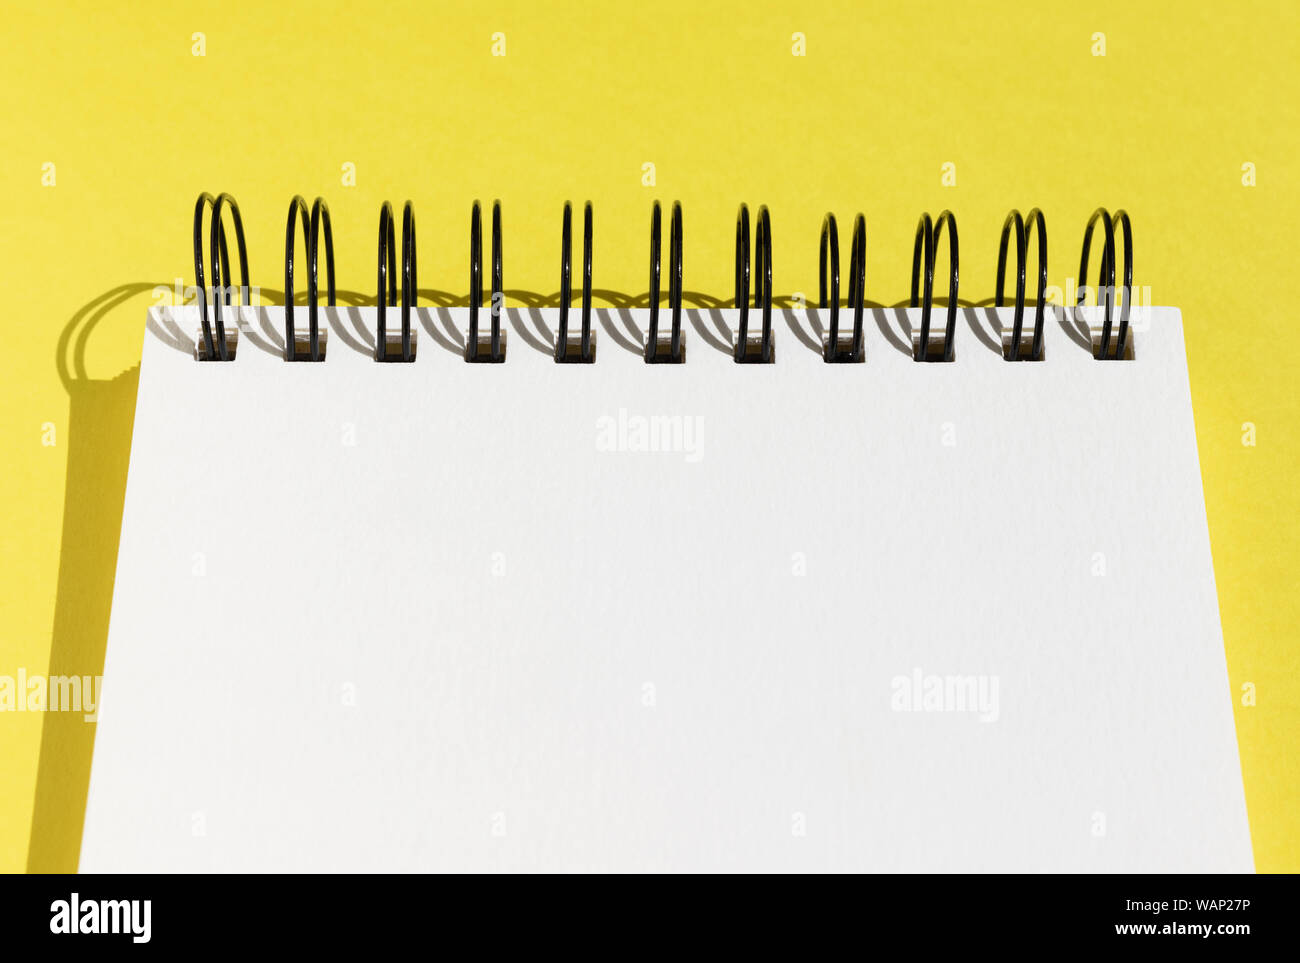 Haut d'un bloc-notes à spirale en blanc sur fond jaune, avec une page blanche et copy space Banque D'Images